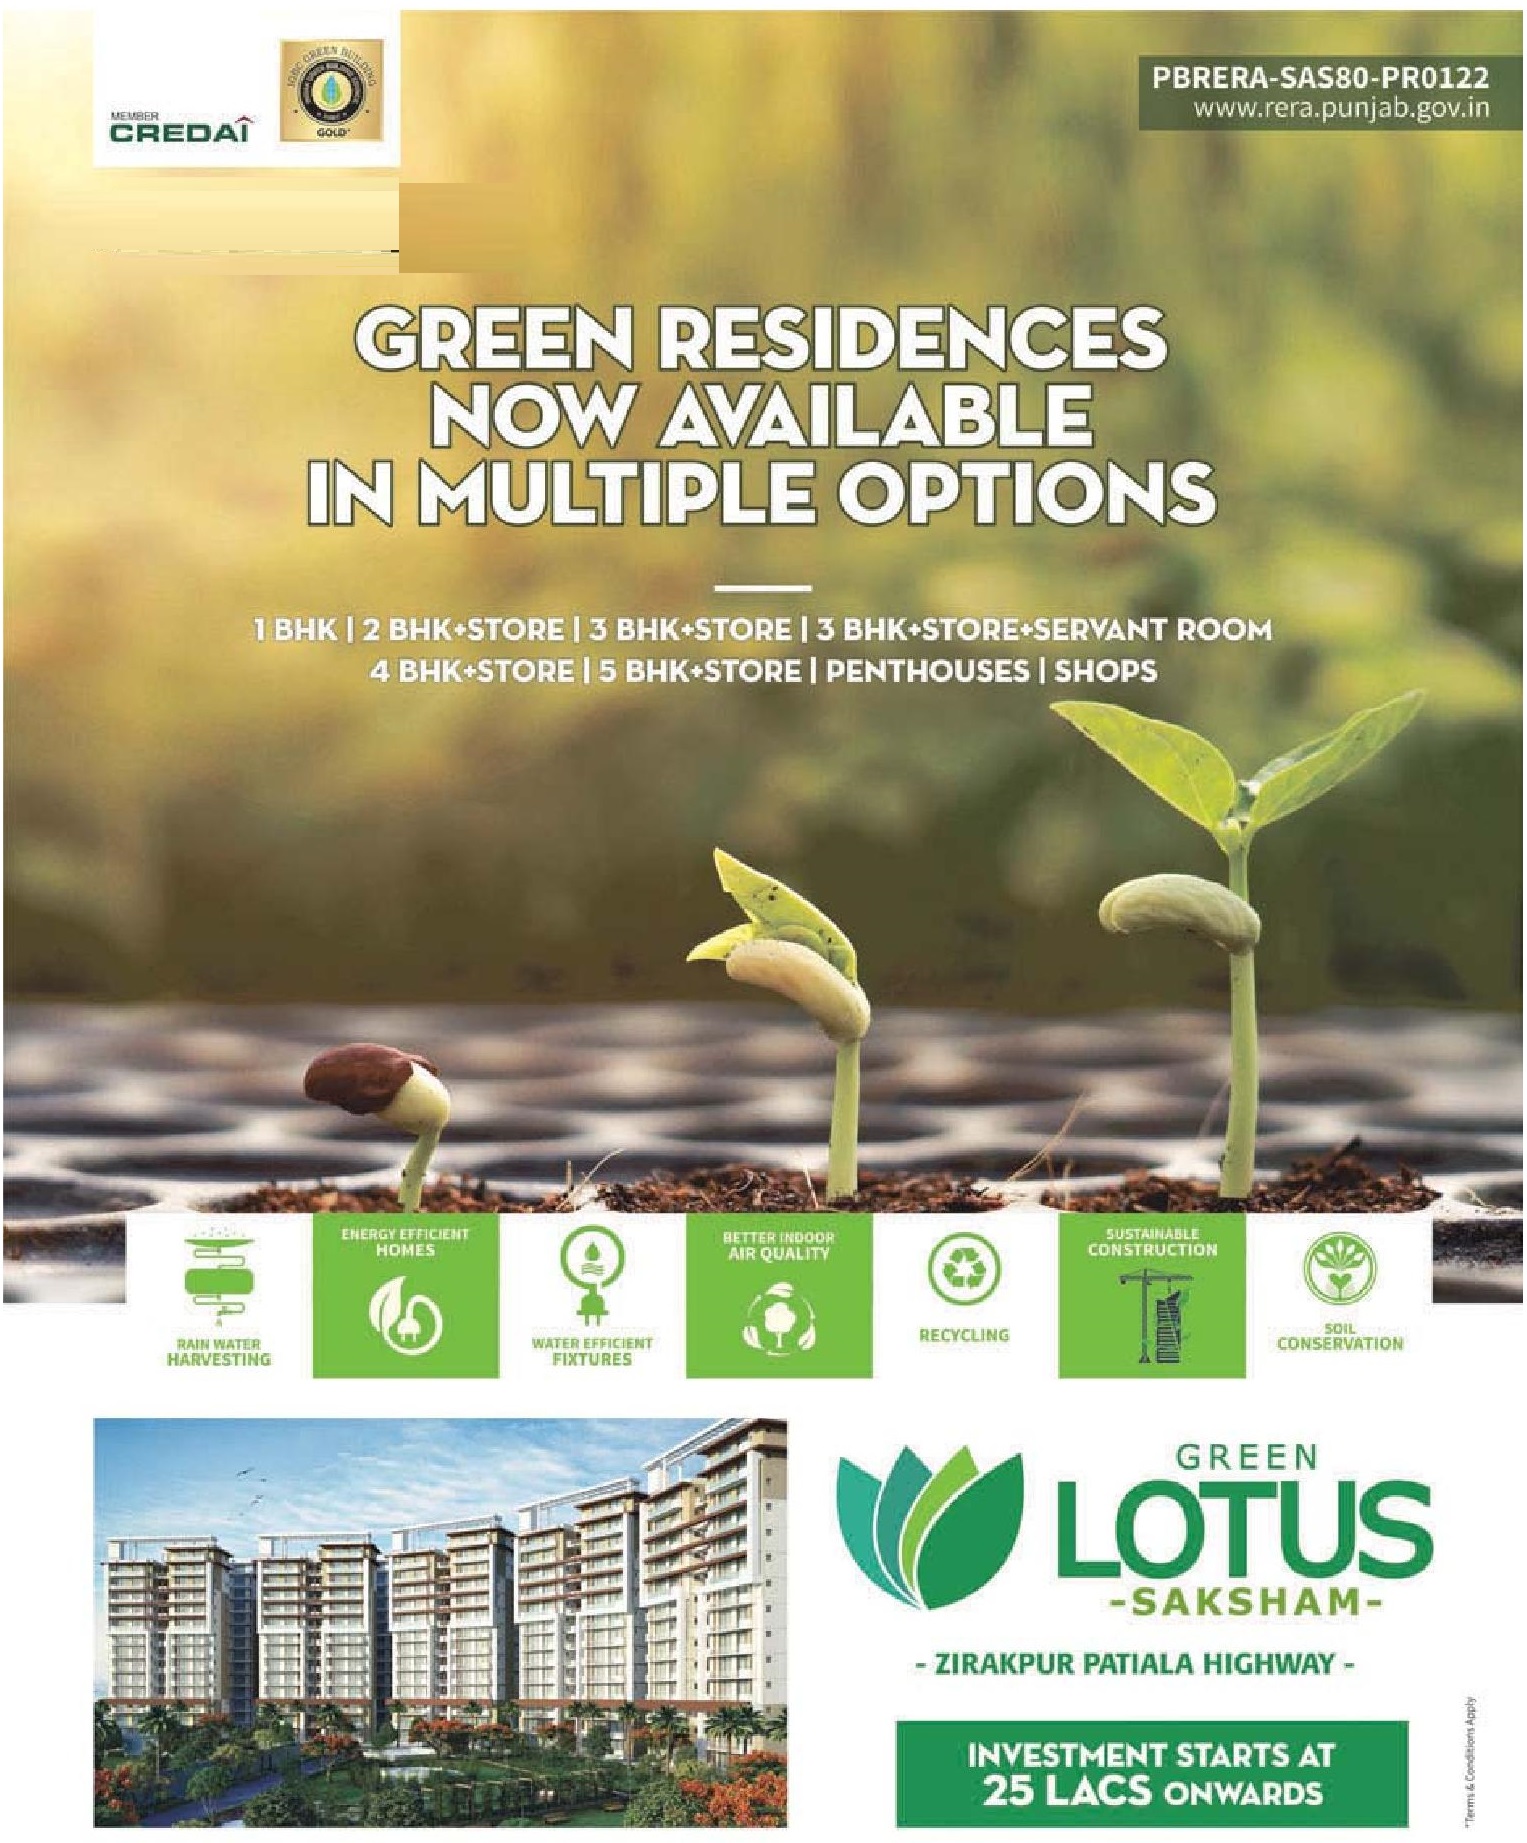 Investments start at Rs. 25 lakhs at Maya Green Lotus Saksham in Chandigarh Update